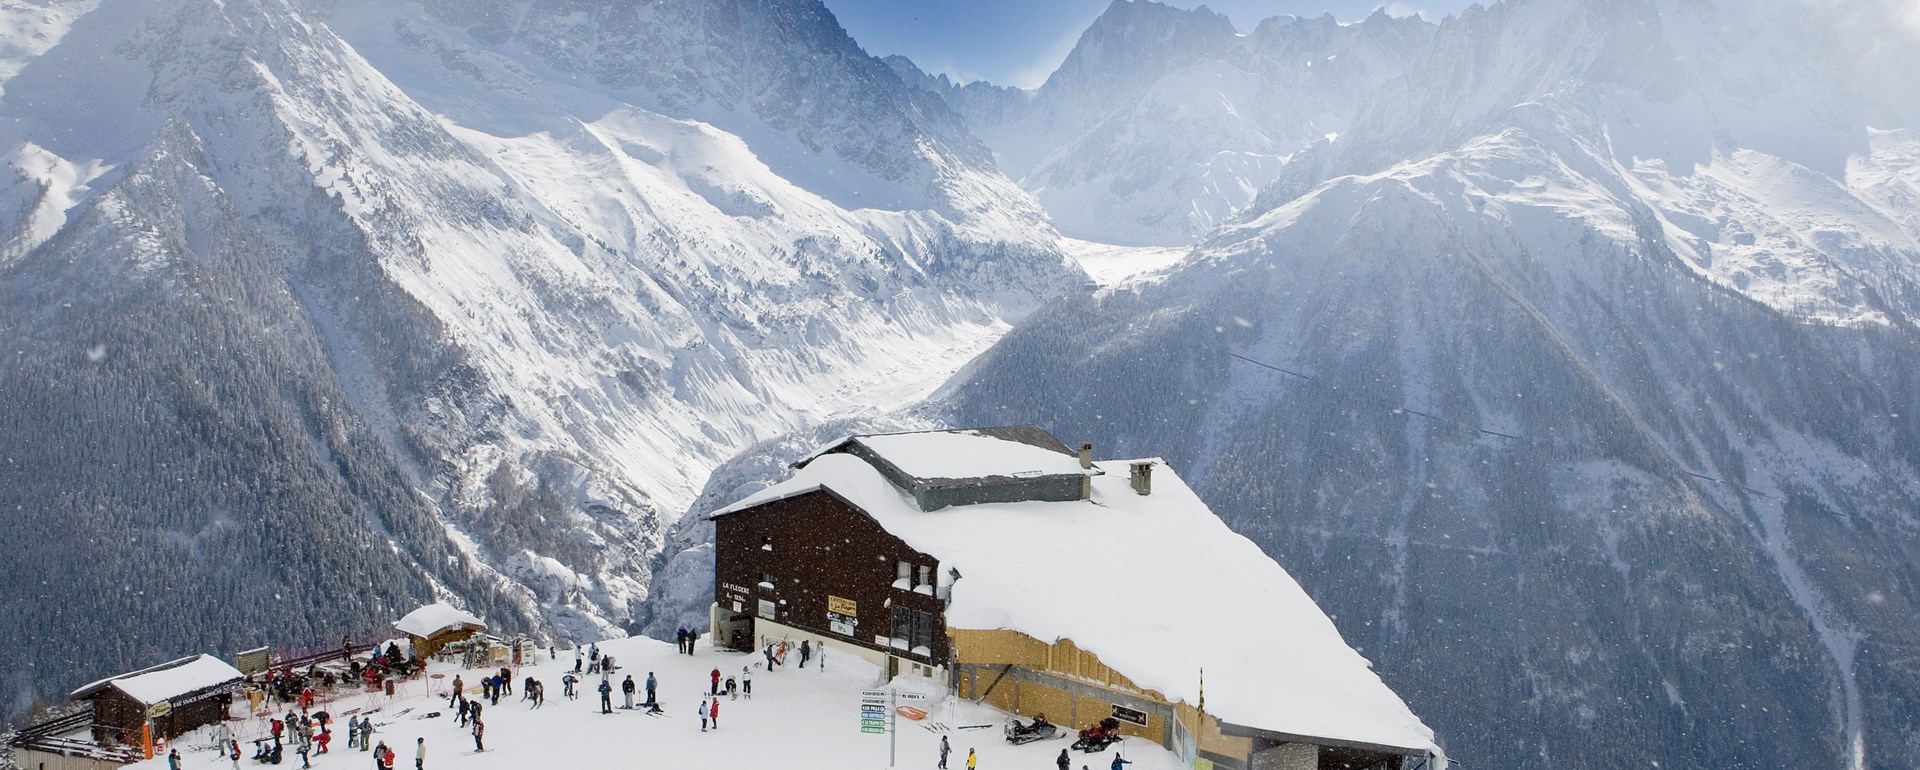 Chamonix Ski Slopes © (m.dalmasso)